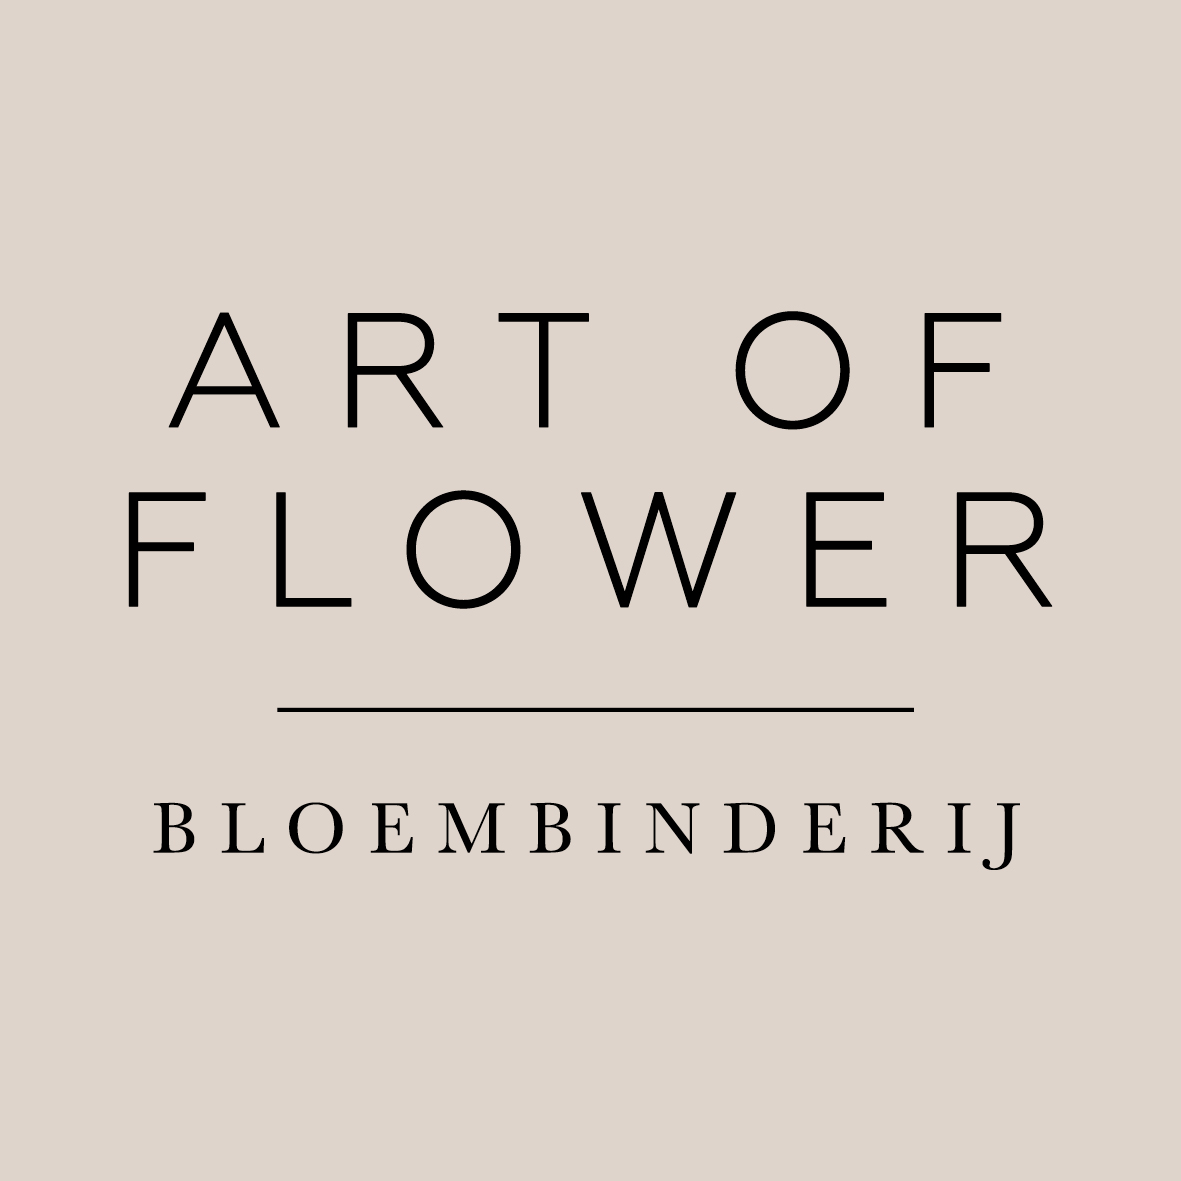 Art of flower